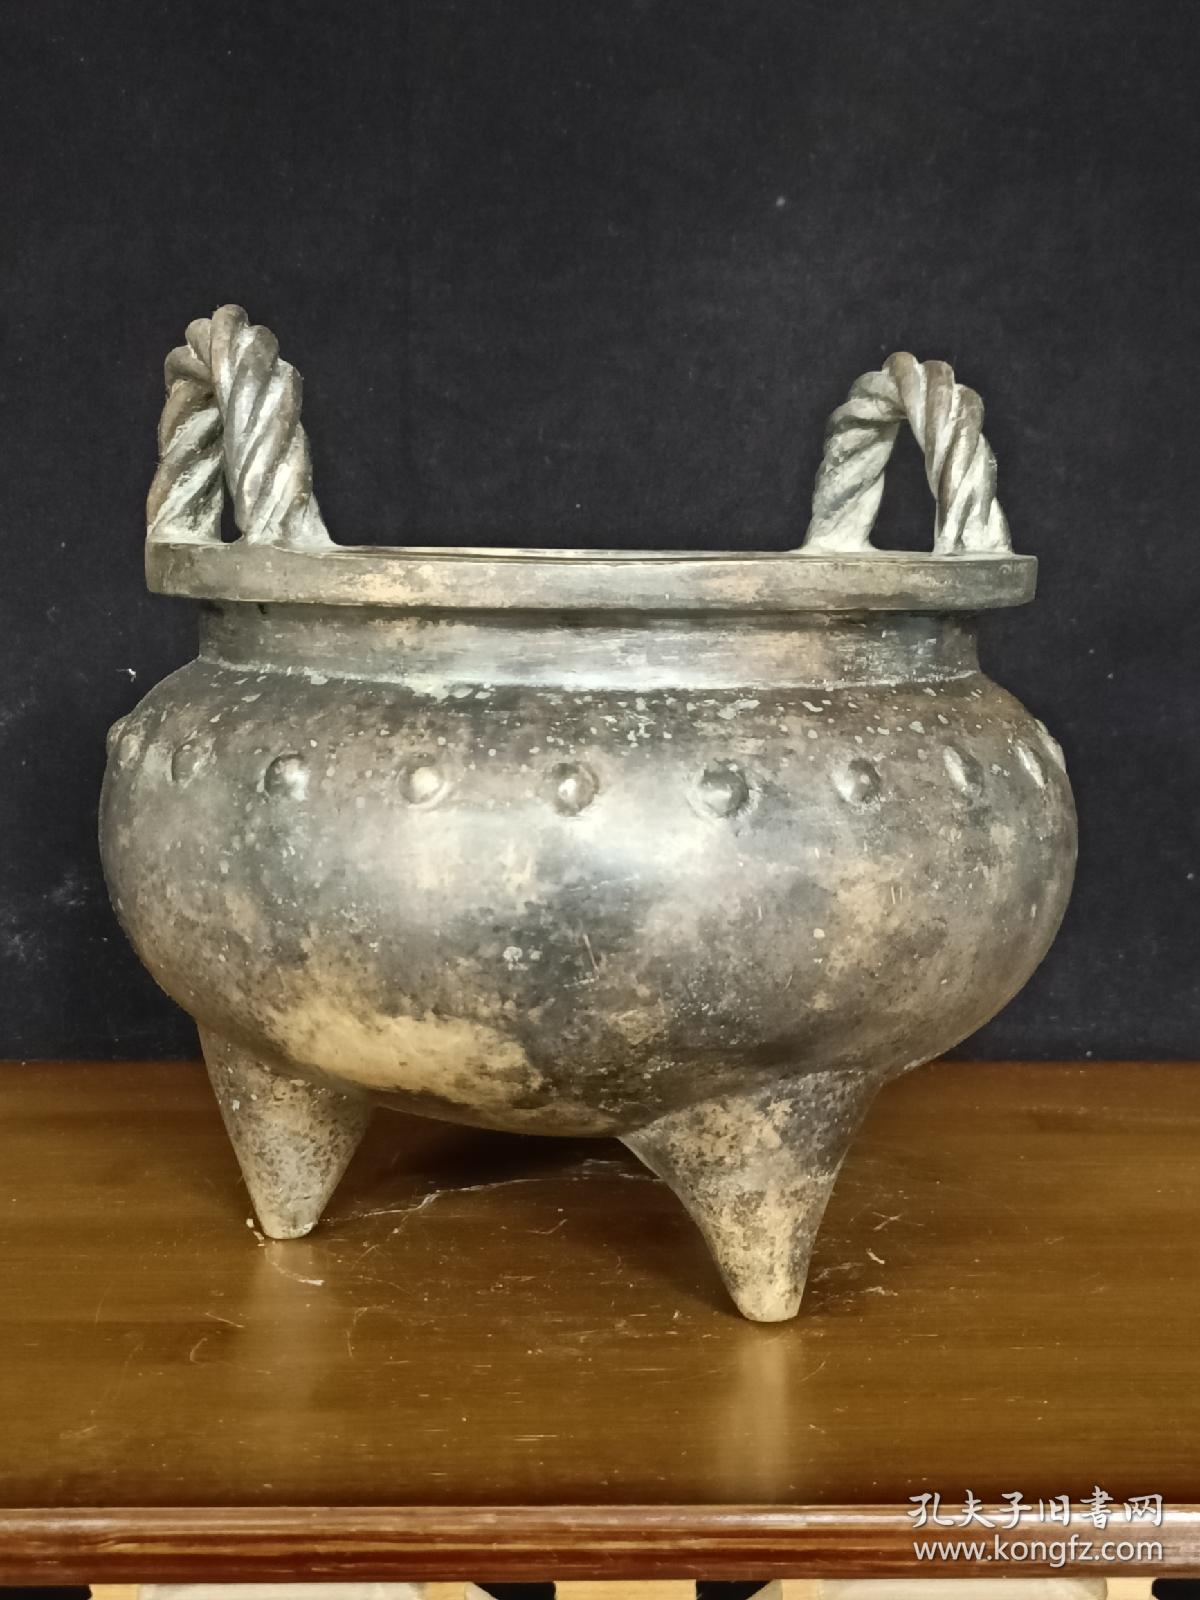 古董  古玩收藏  铜器   铜香炉  传世铜炉 回流铜香炉   纯铜香炉   长18厘米，宽18厘米，高18厘米，重量9斤